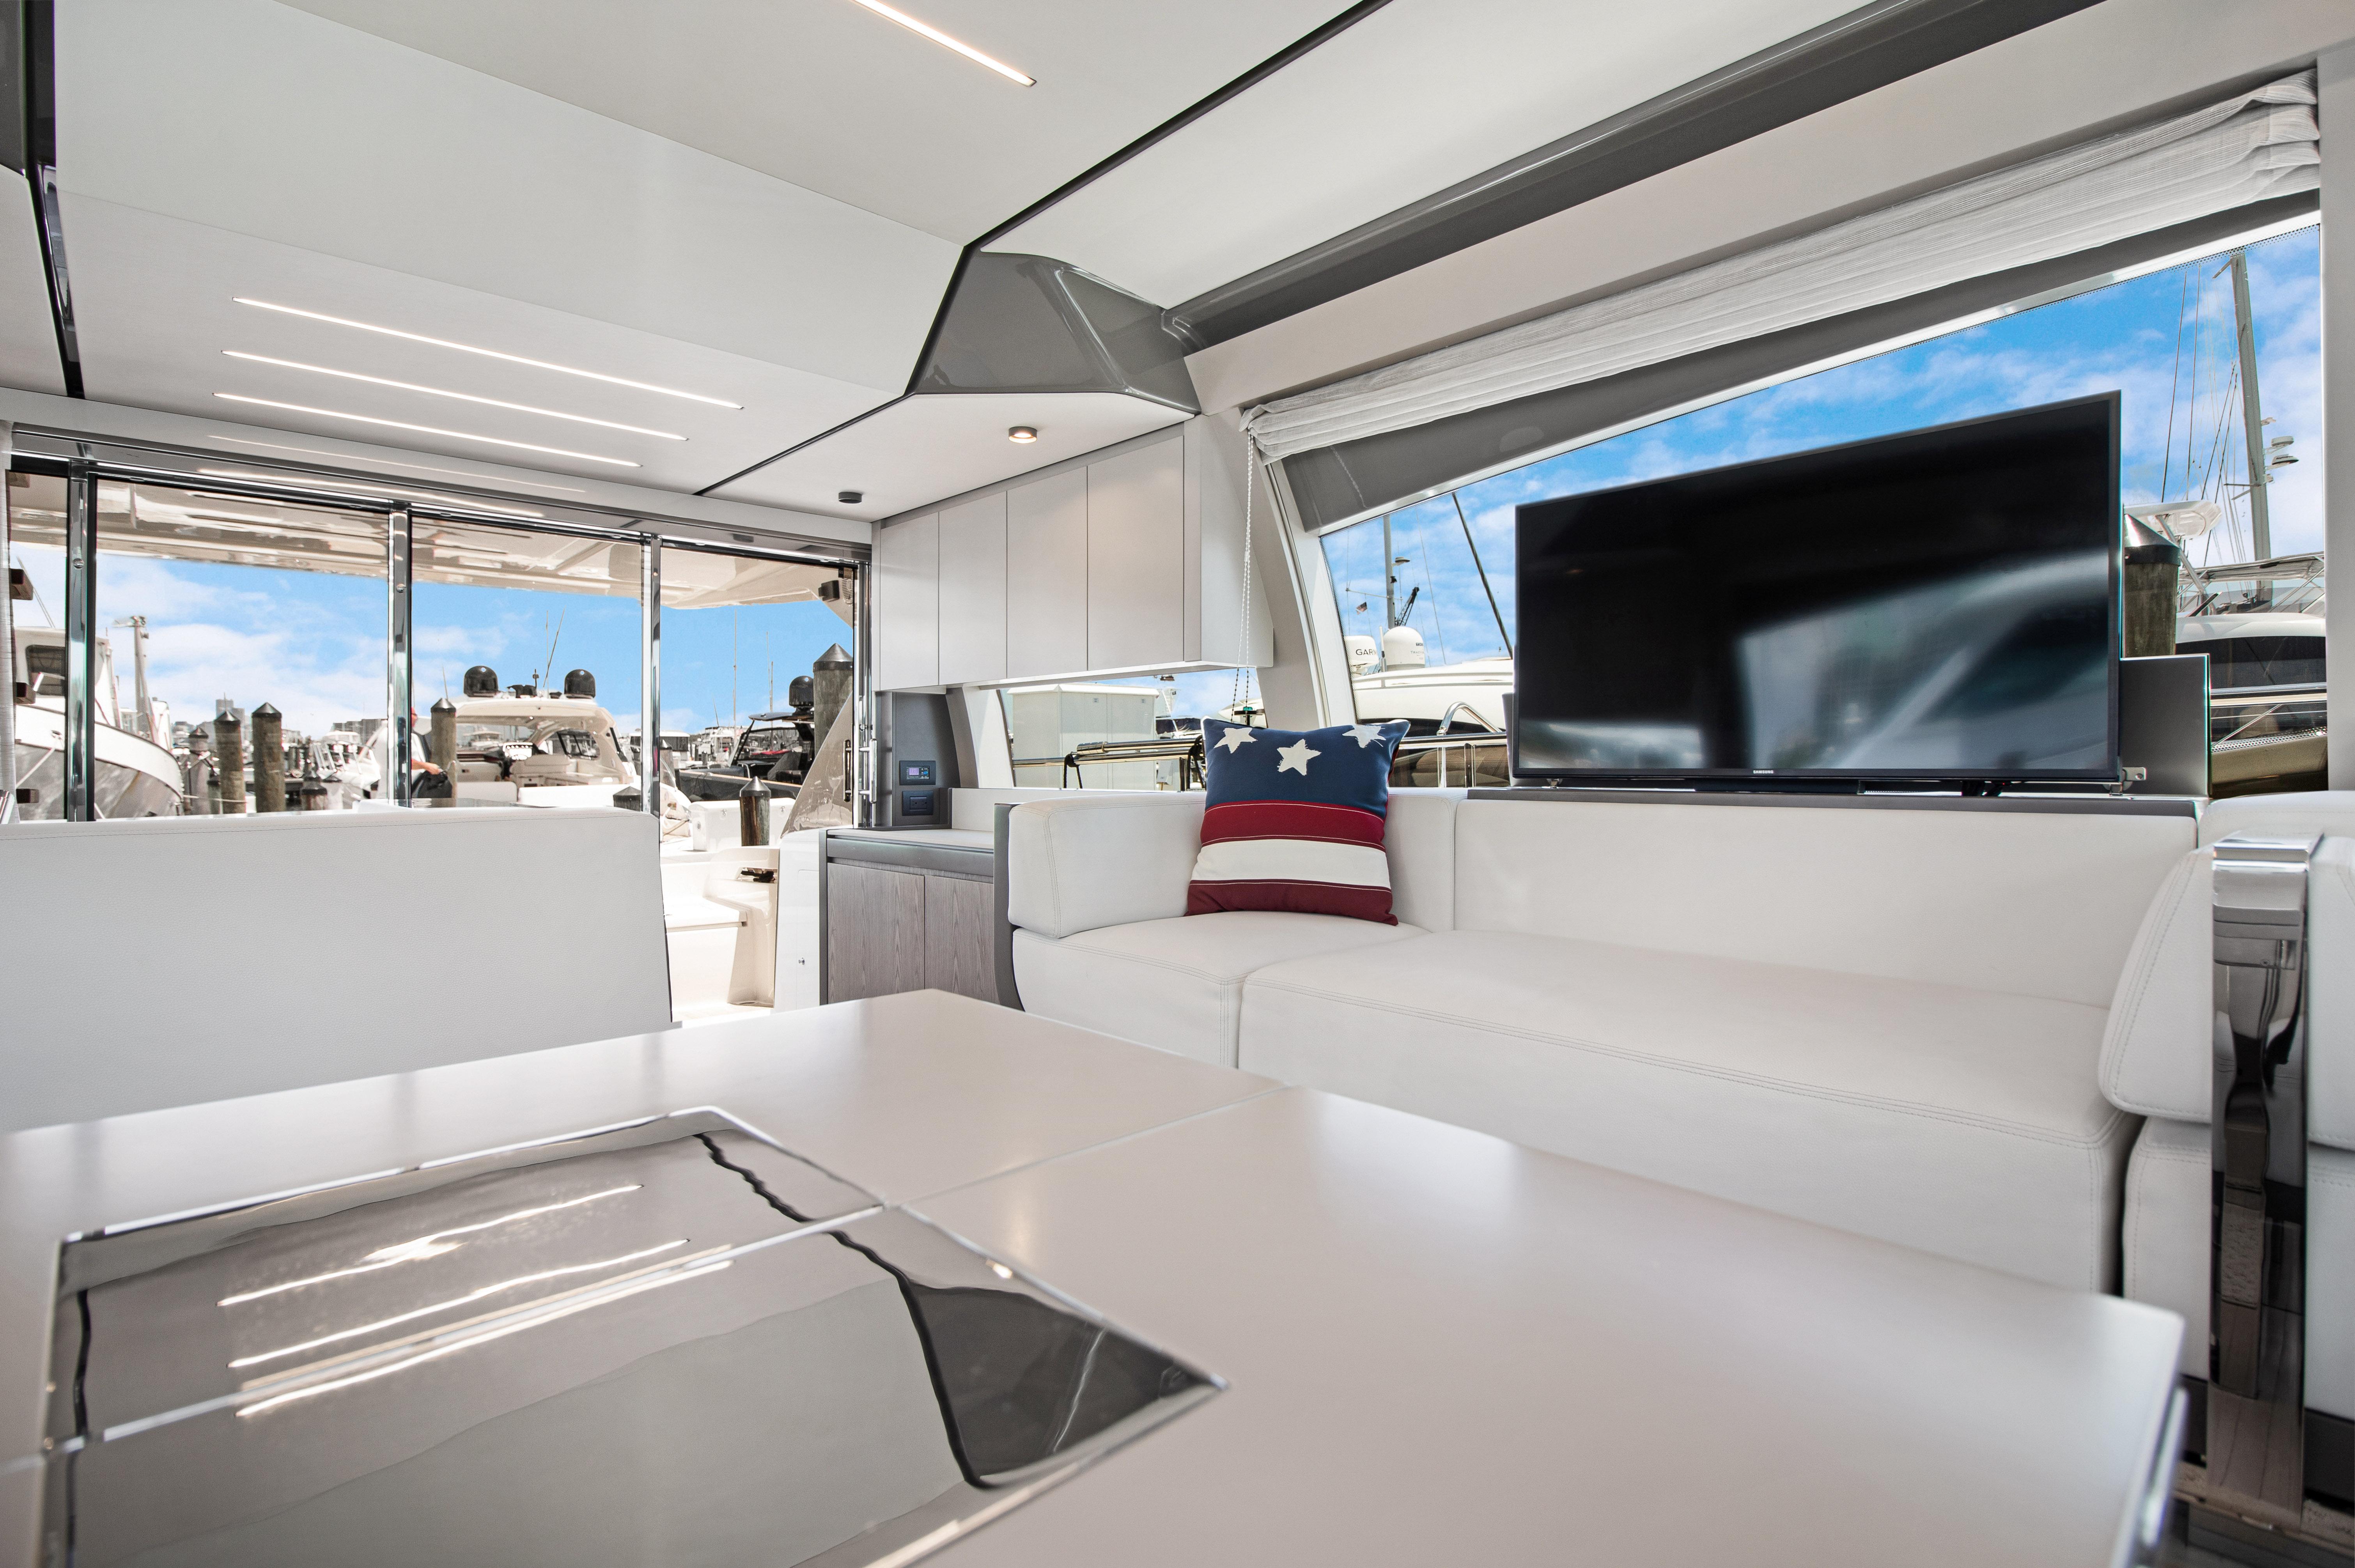 2018 Ferretti Yachts 550 Acqua